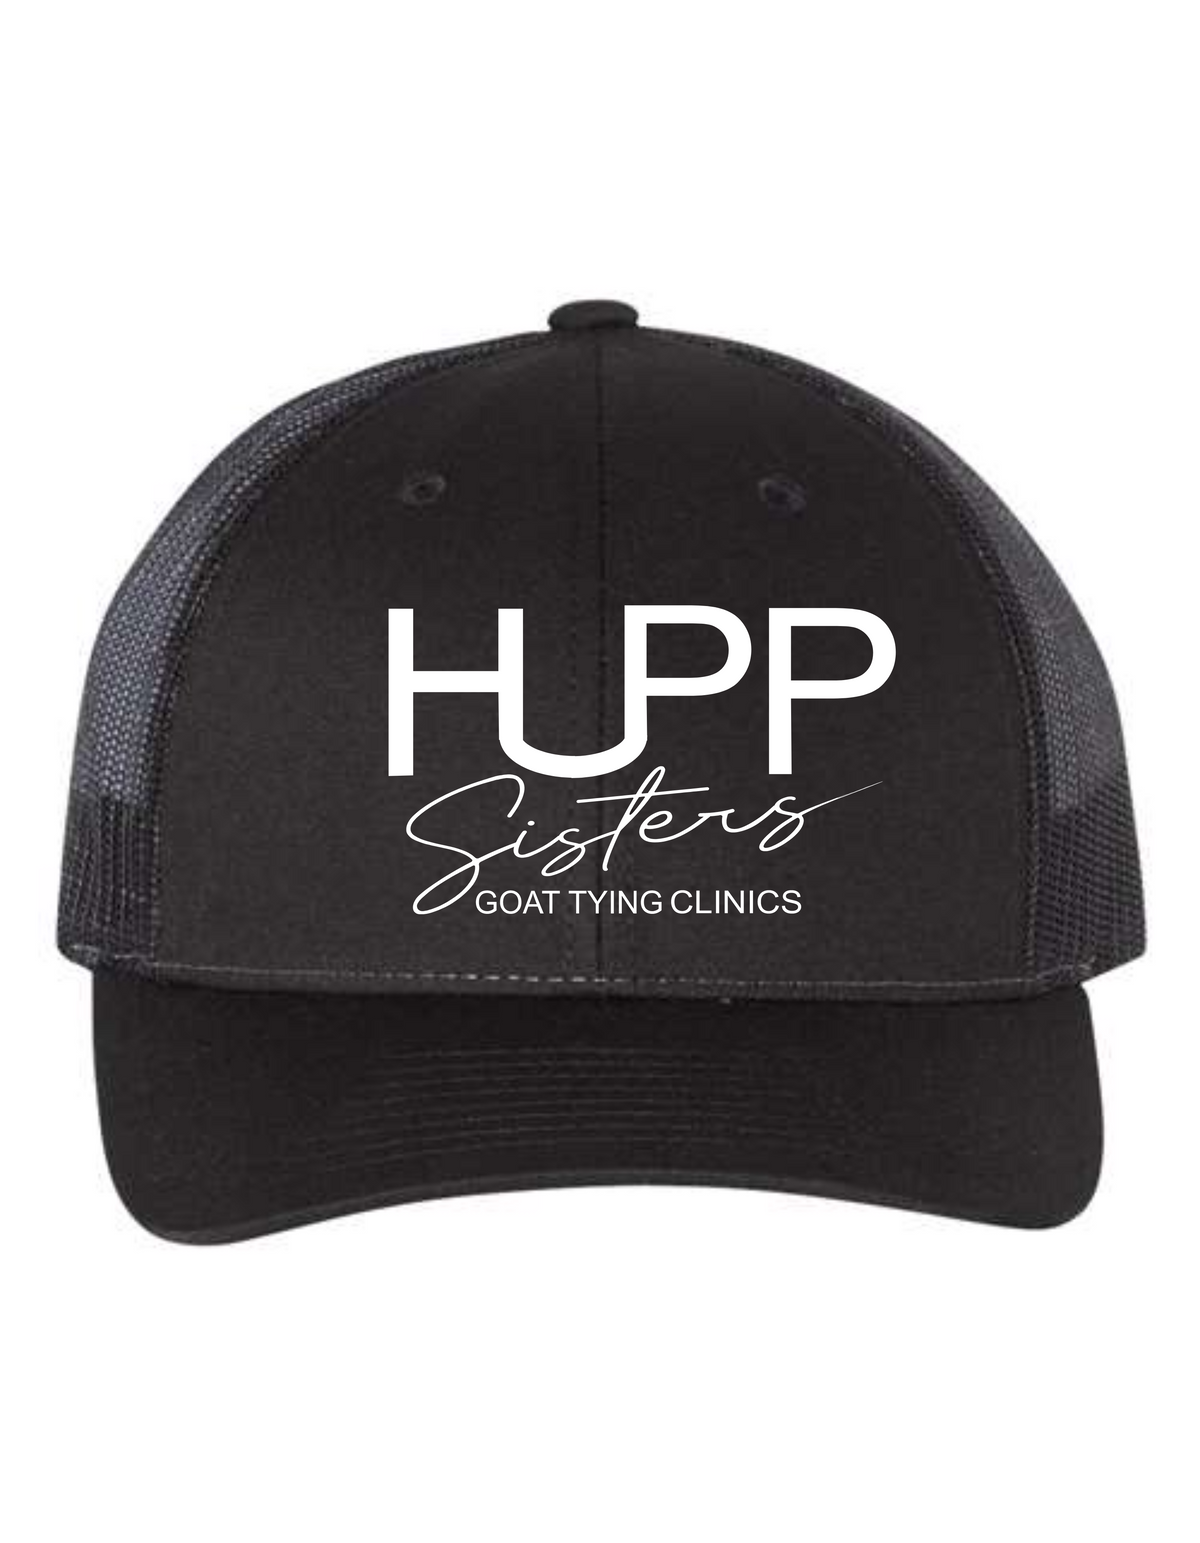 Hupp Sisters Caps